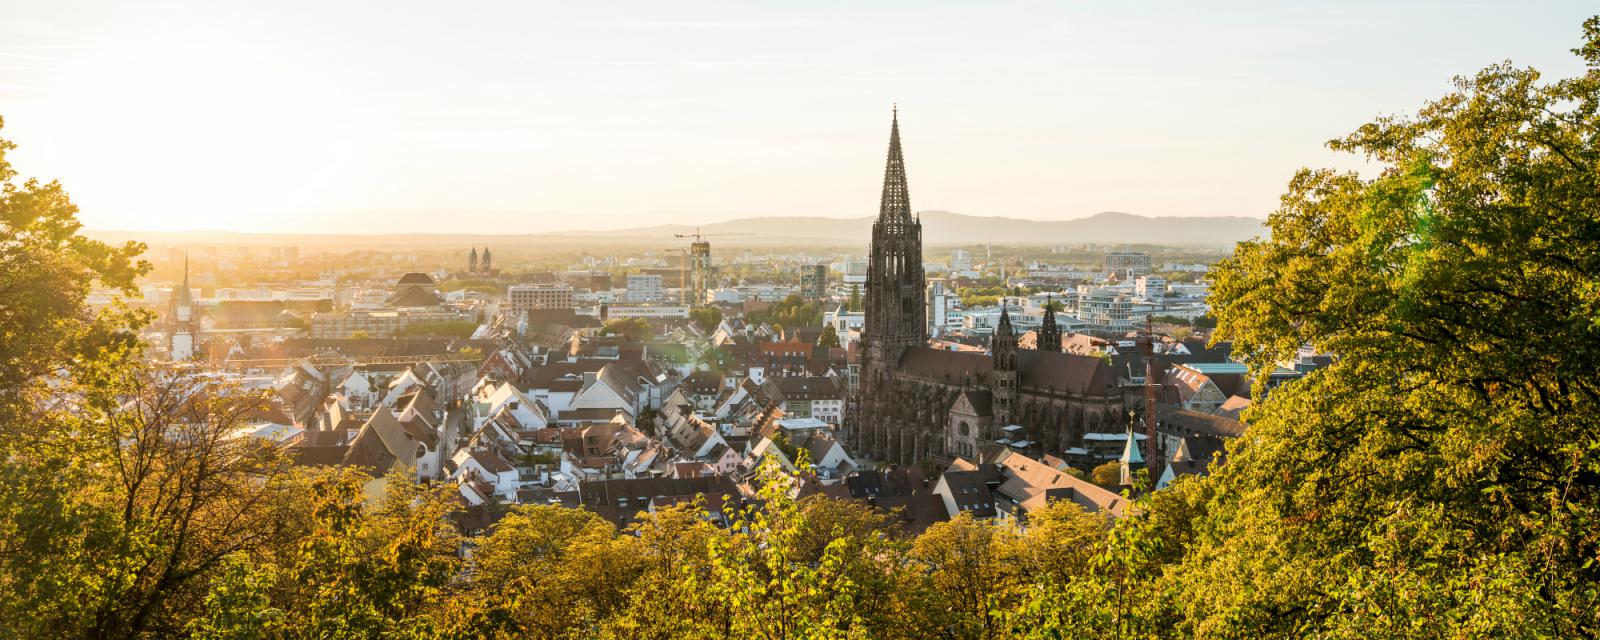 Herfst in Freiburg: 10 tips voor een veelzijdige stedentrip 